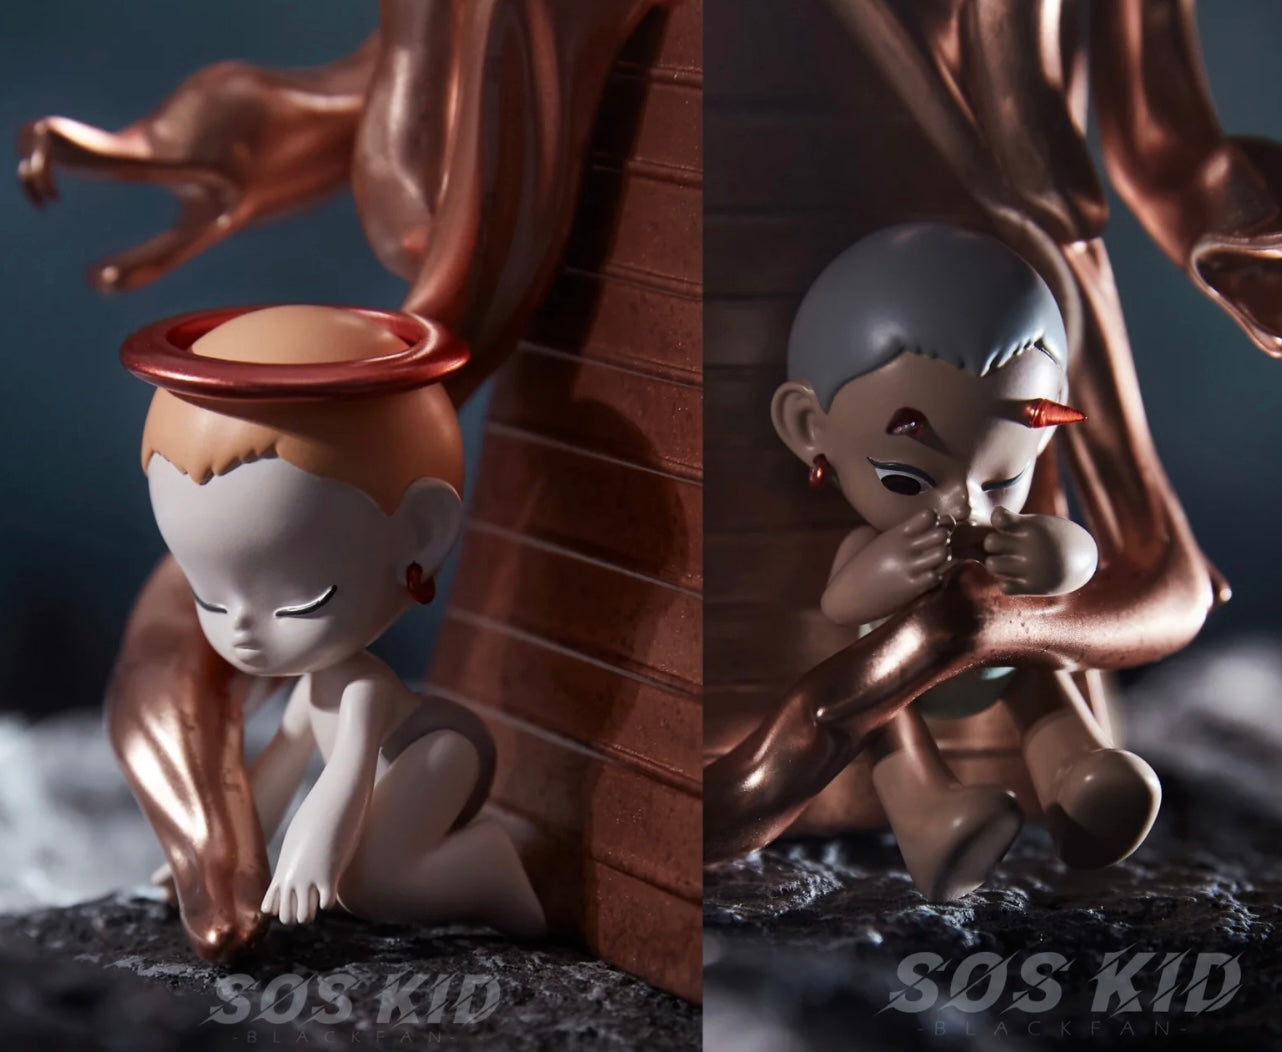 [FUNFORFUN] SOS KID - "Human" Limited Art Toy